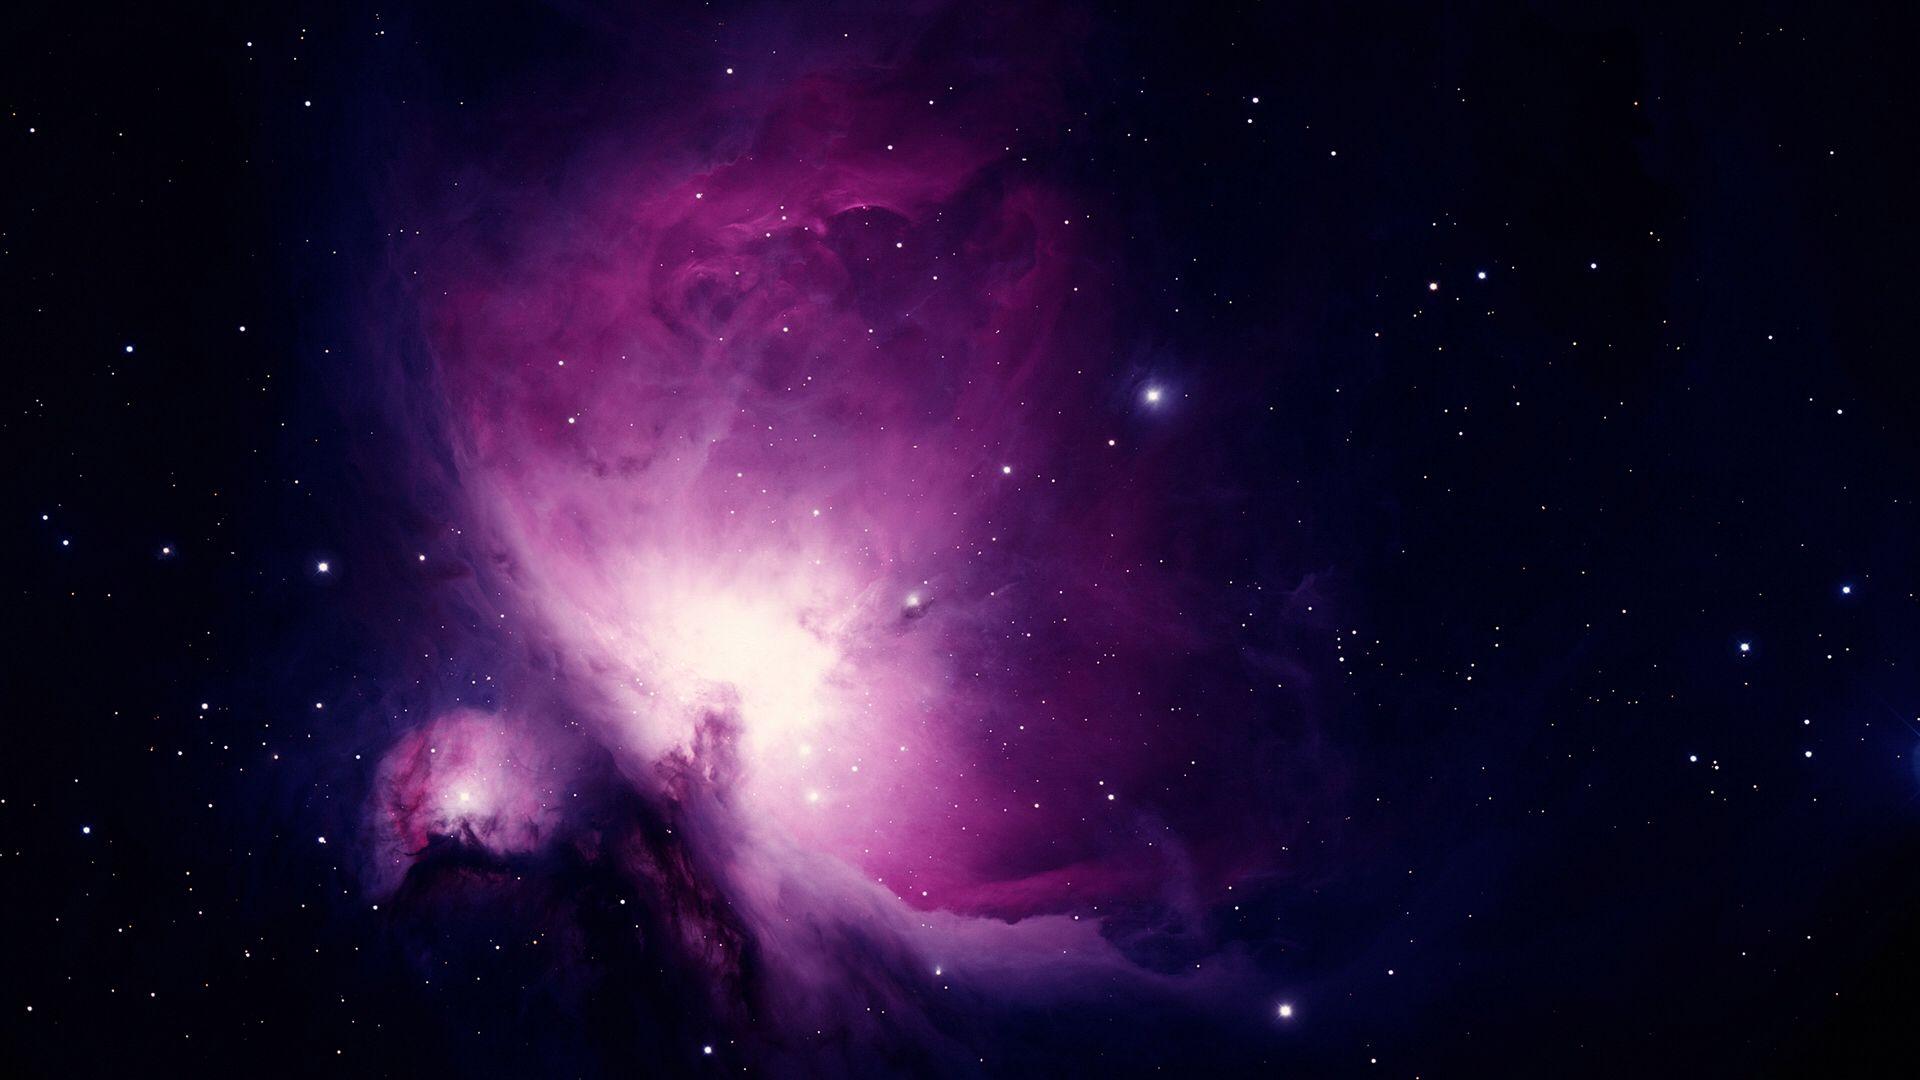 Image Wallpaper Ps3 Nebula_873